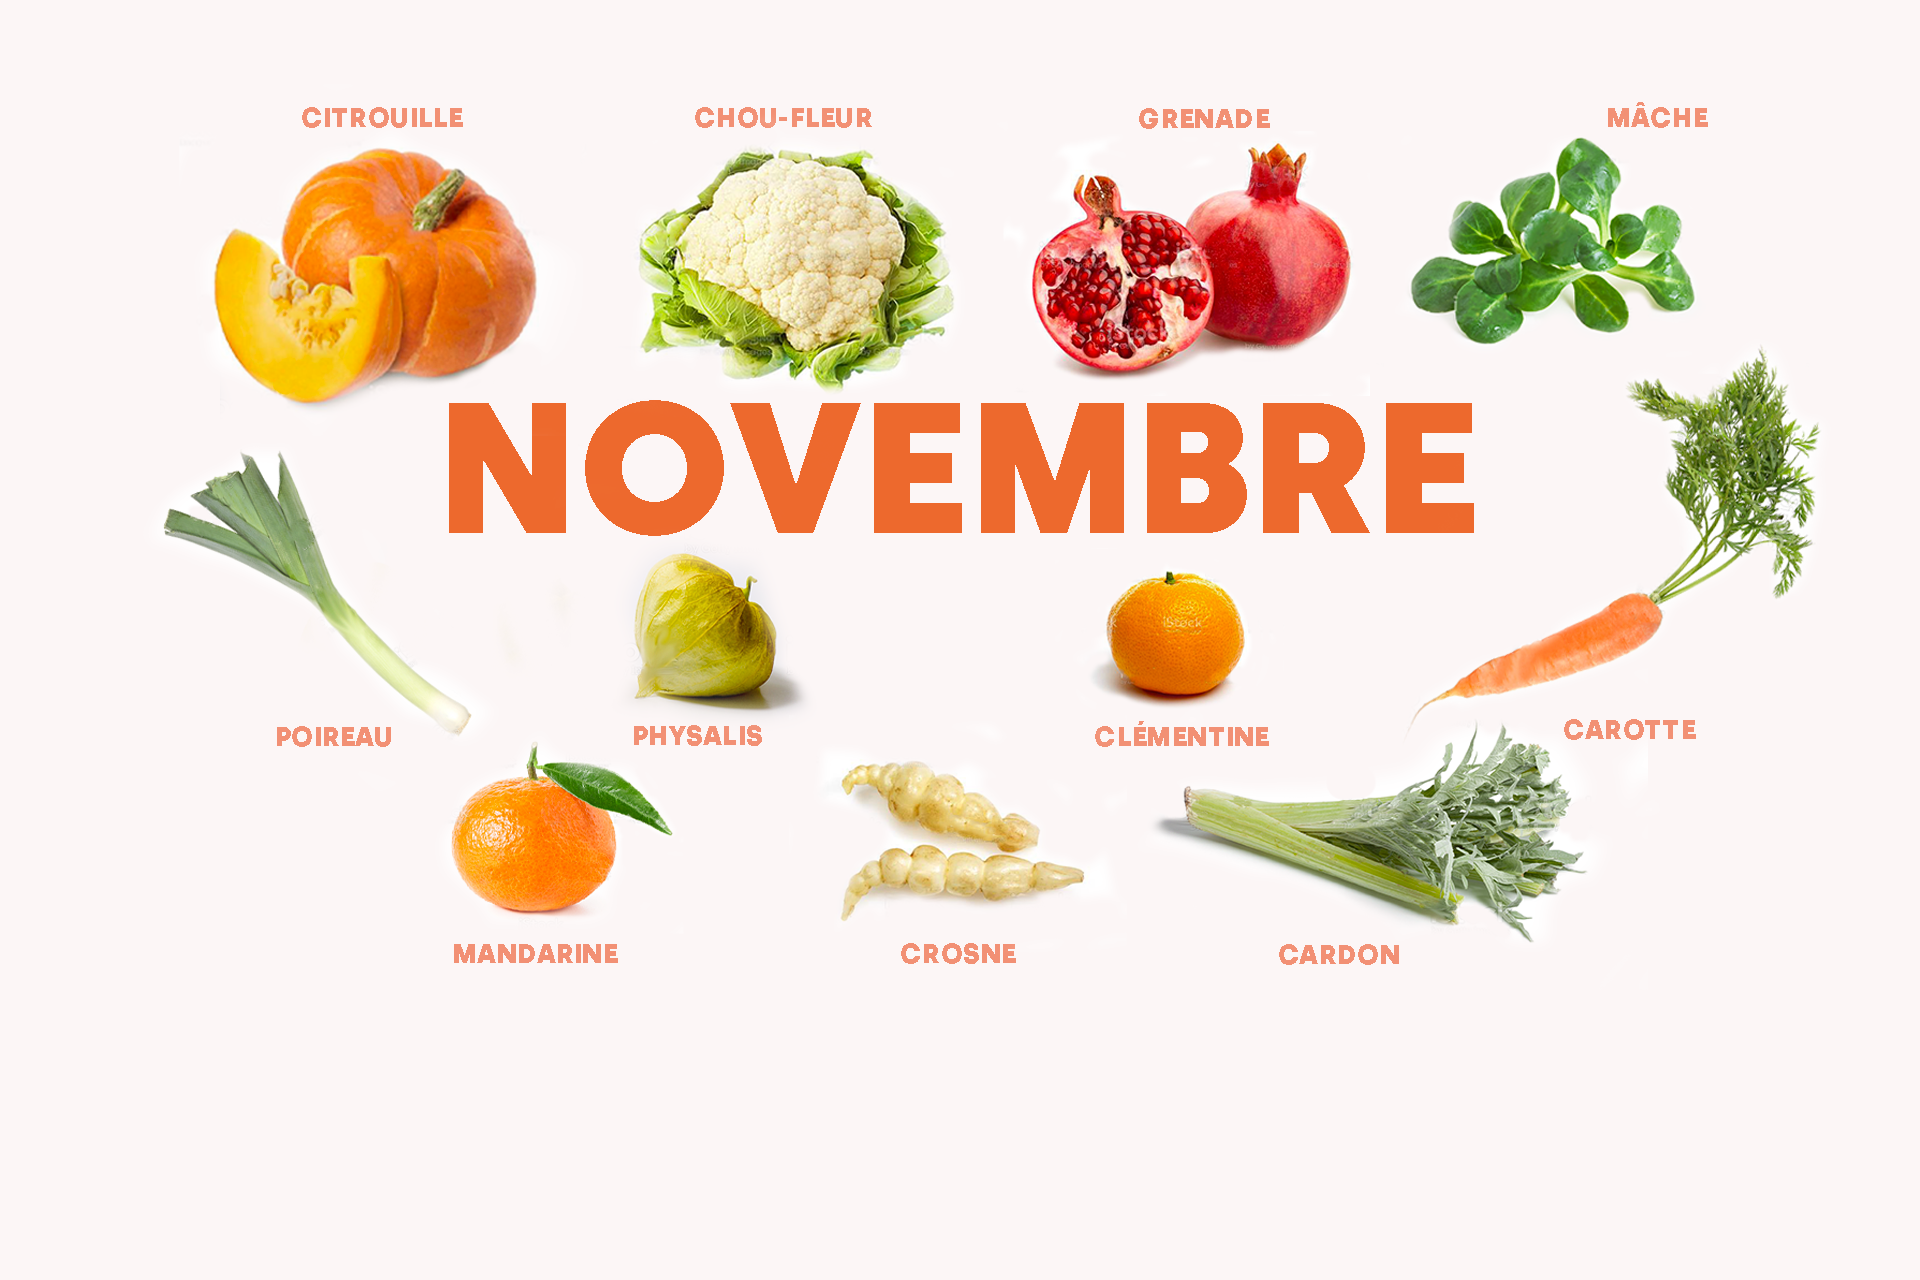 Fruits et légumes de saison d'octobre